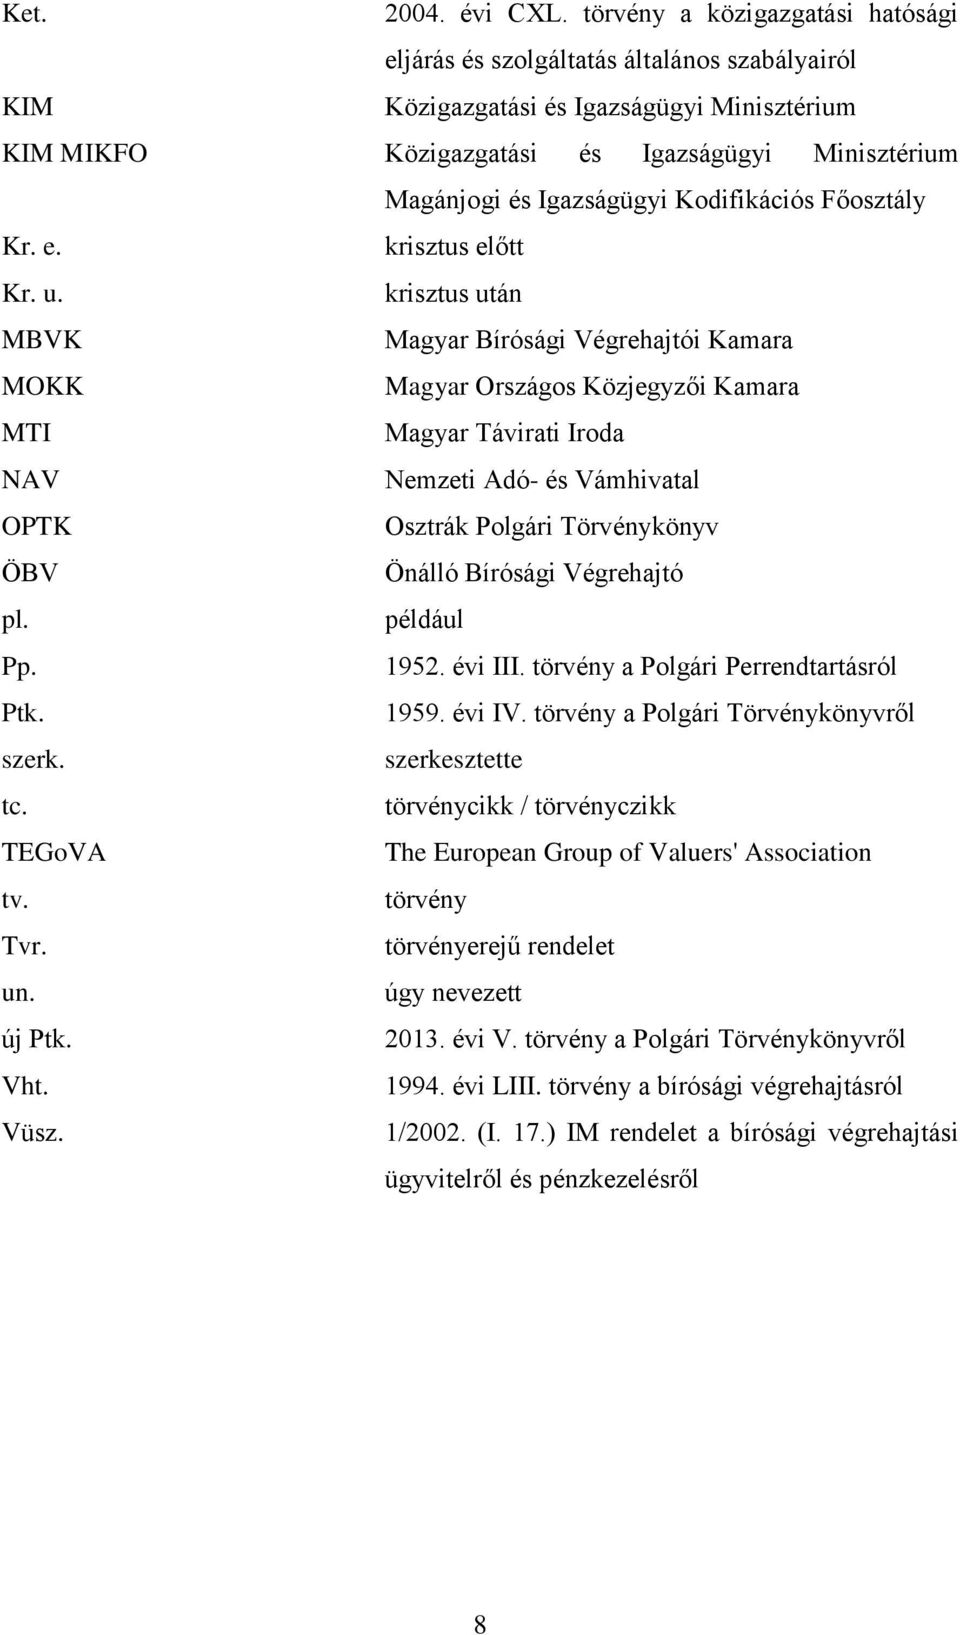 PHD ÉRTEKEZÉS. A bírósági végrehajtás jogintézményének lehetséges  fejlesztési irányai Magyarországon - PDF Free Download